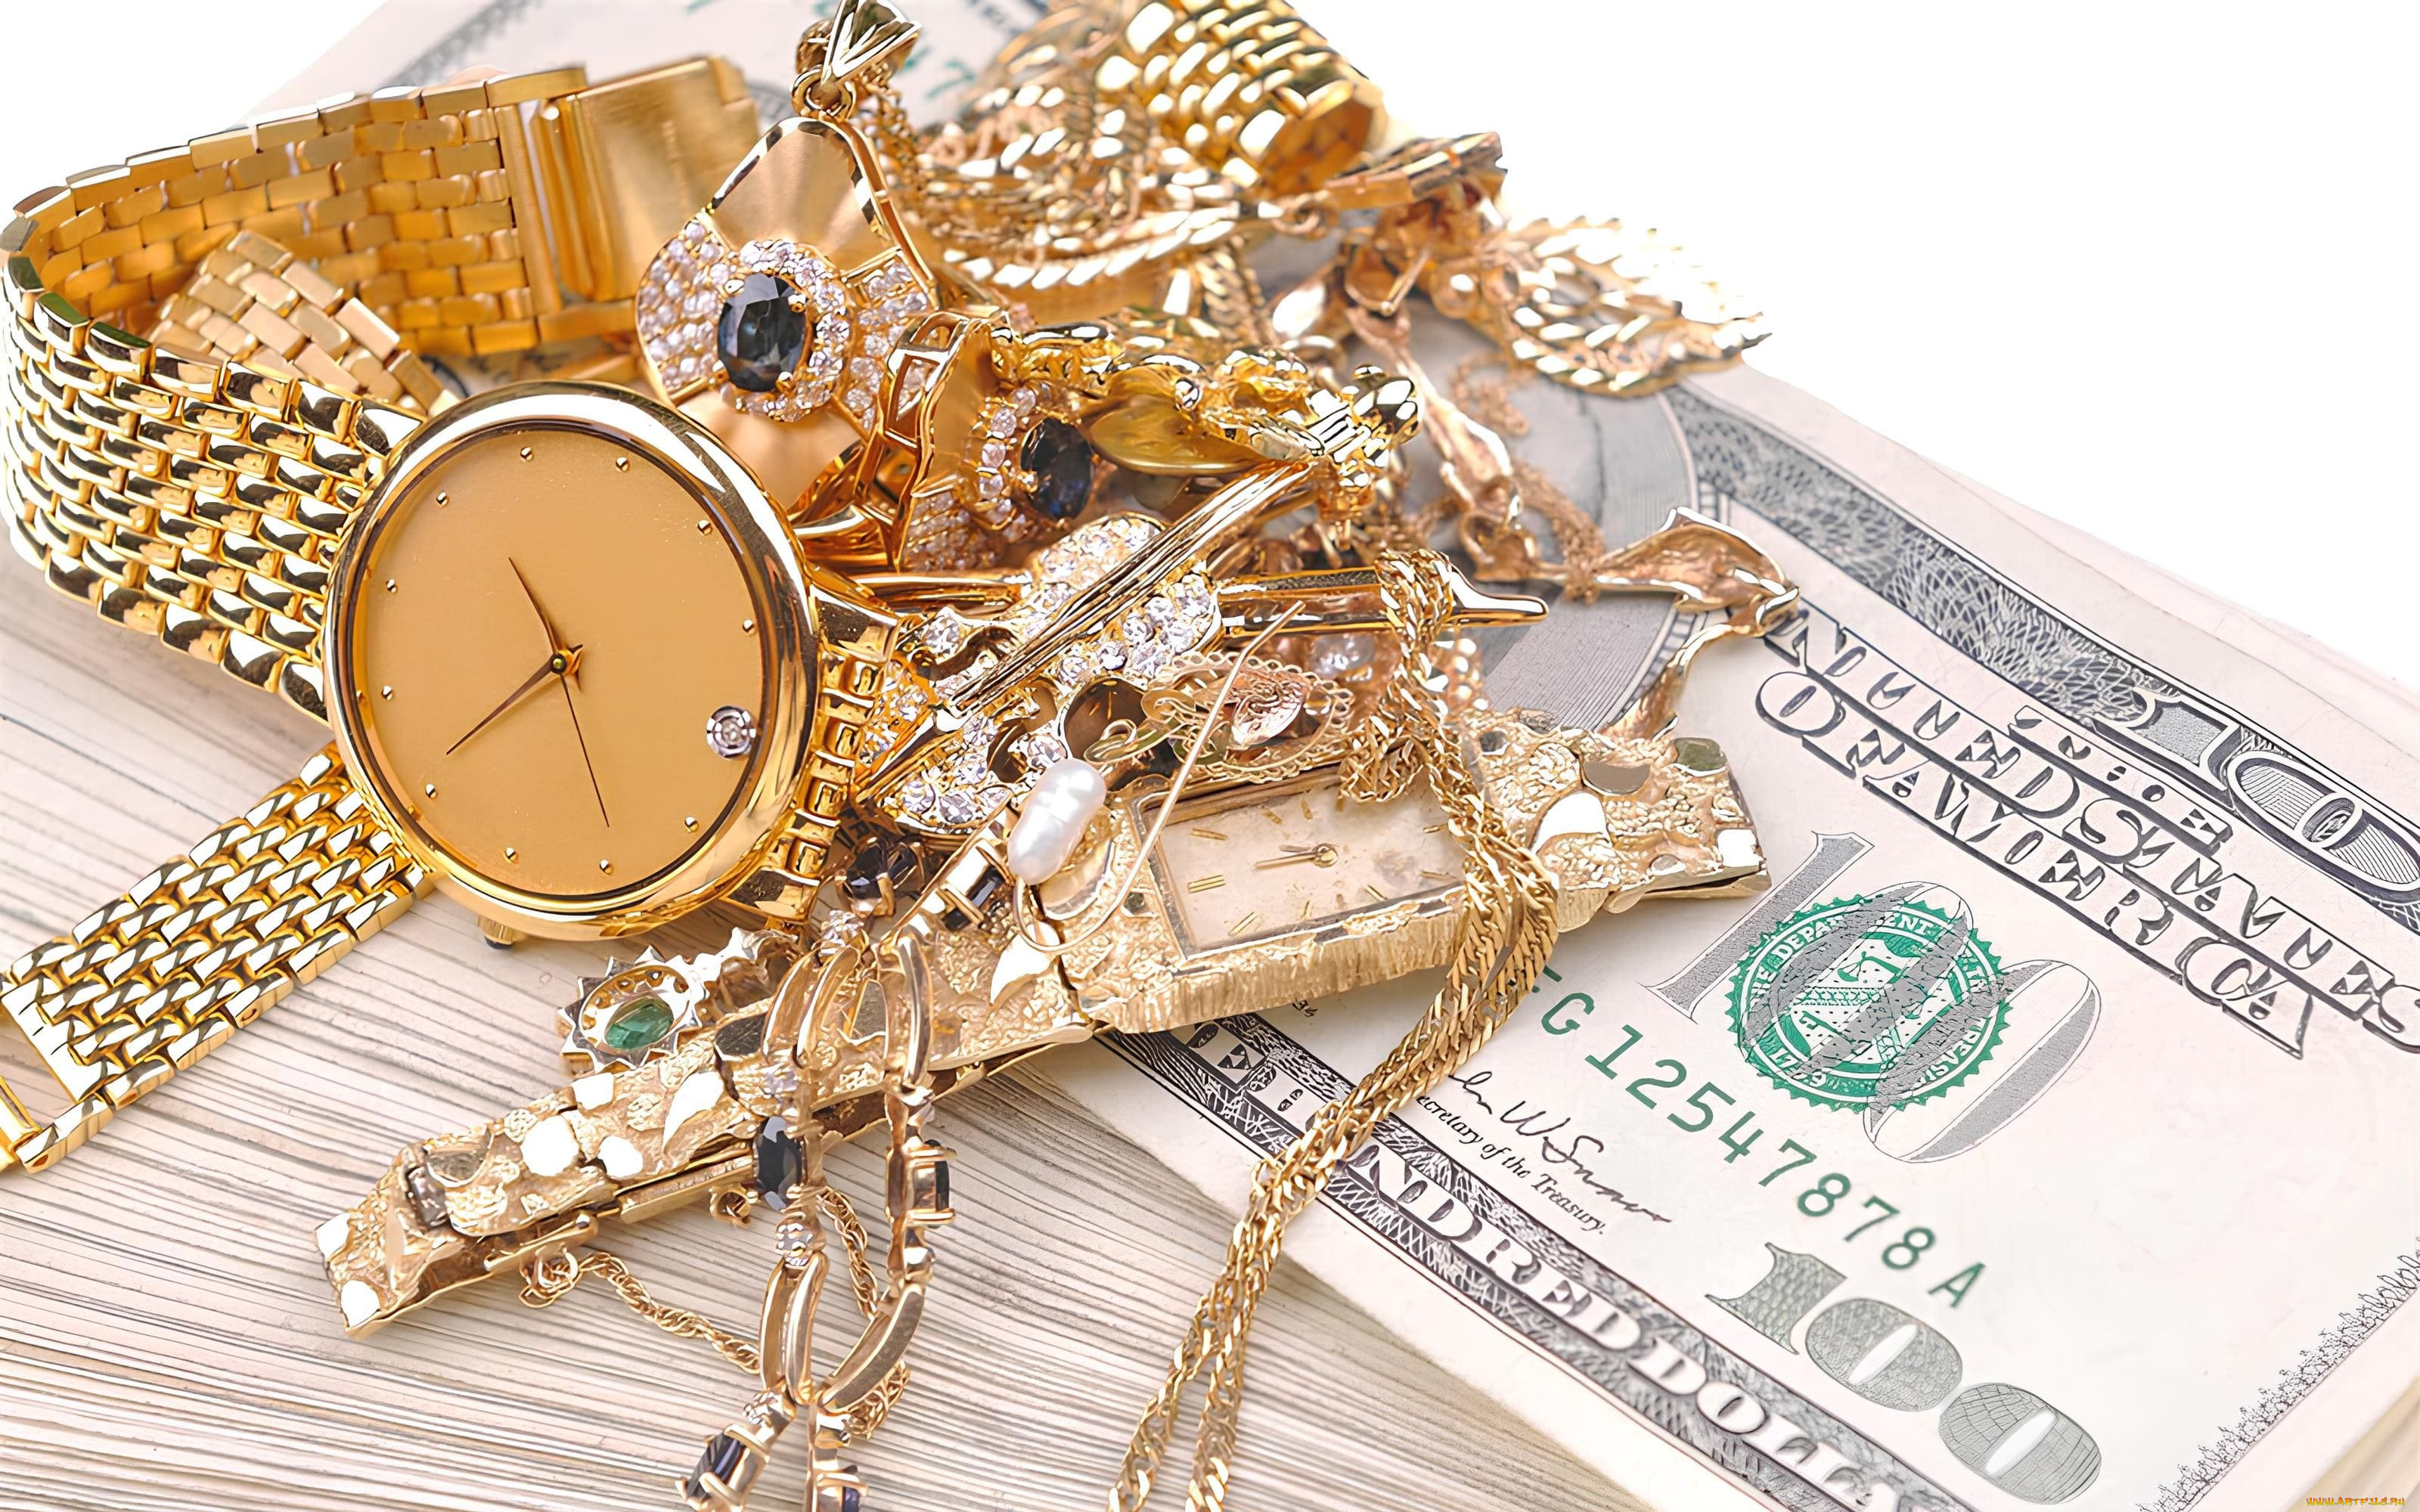 разное, золото, , купюры, , монеты, золотые, украшения, наручные, часы, деньги, купюры, драгоценности